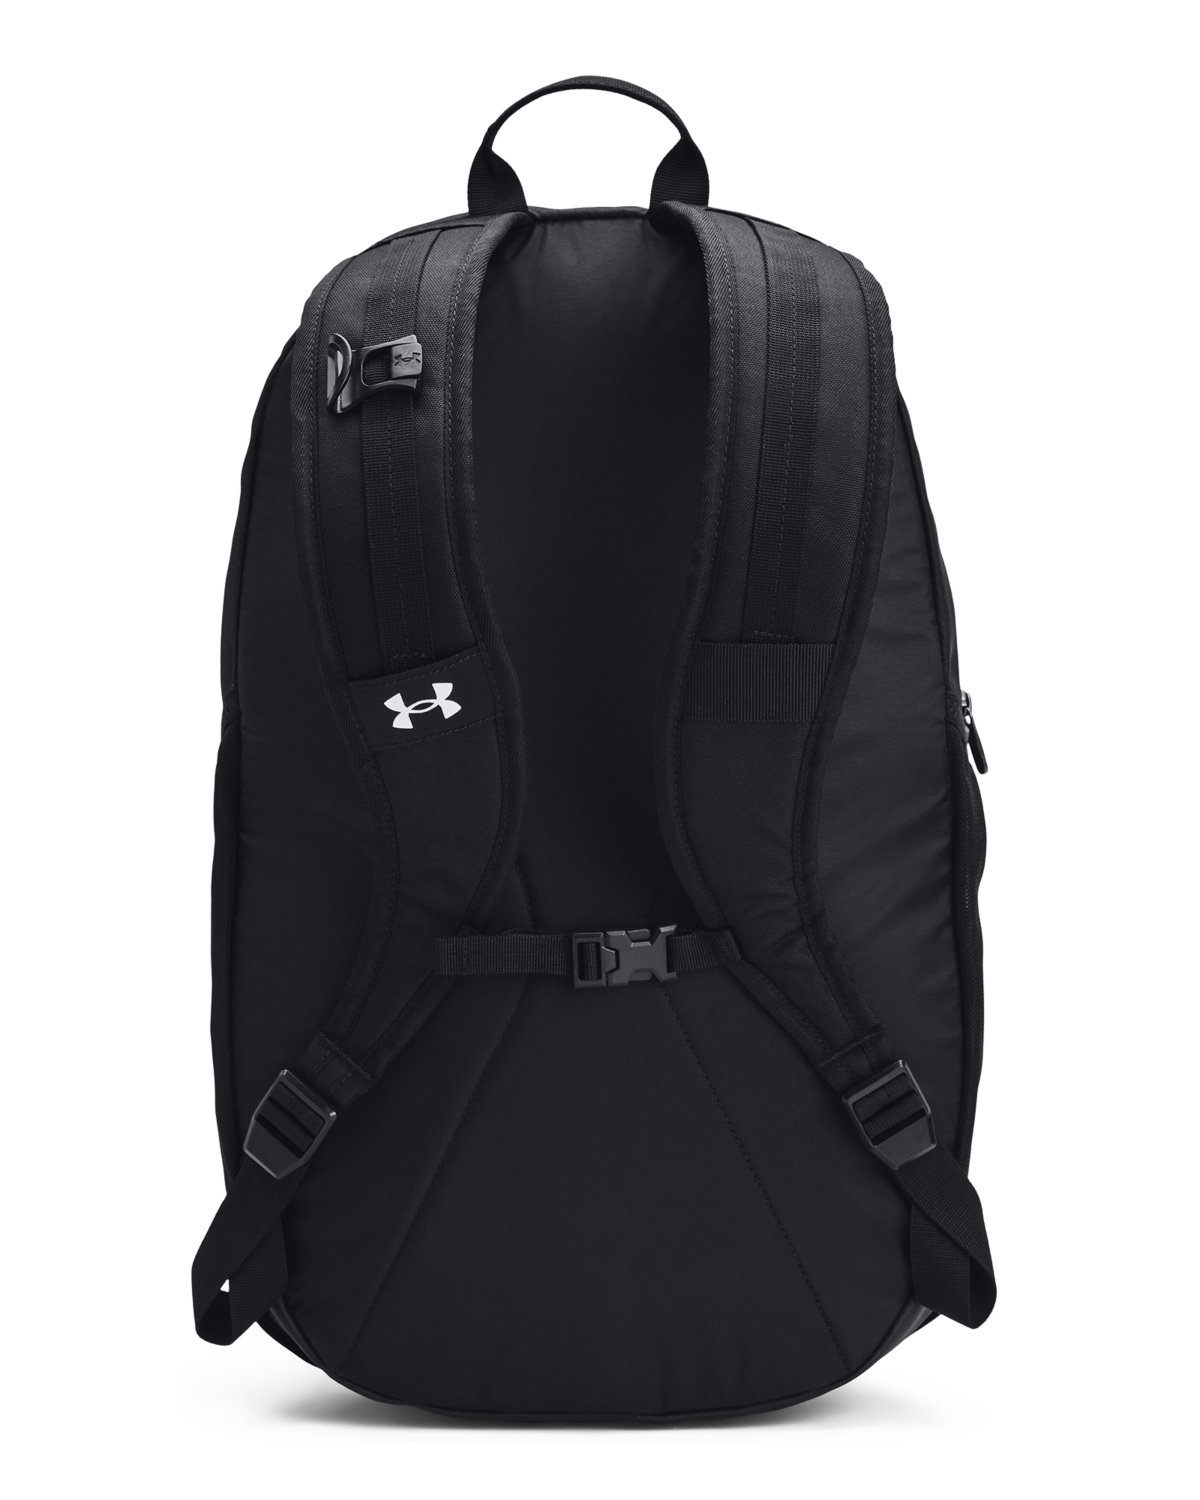 Backpack Under Armour UA Gametime Backpack-Black